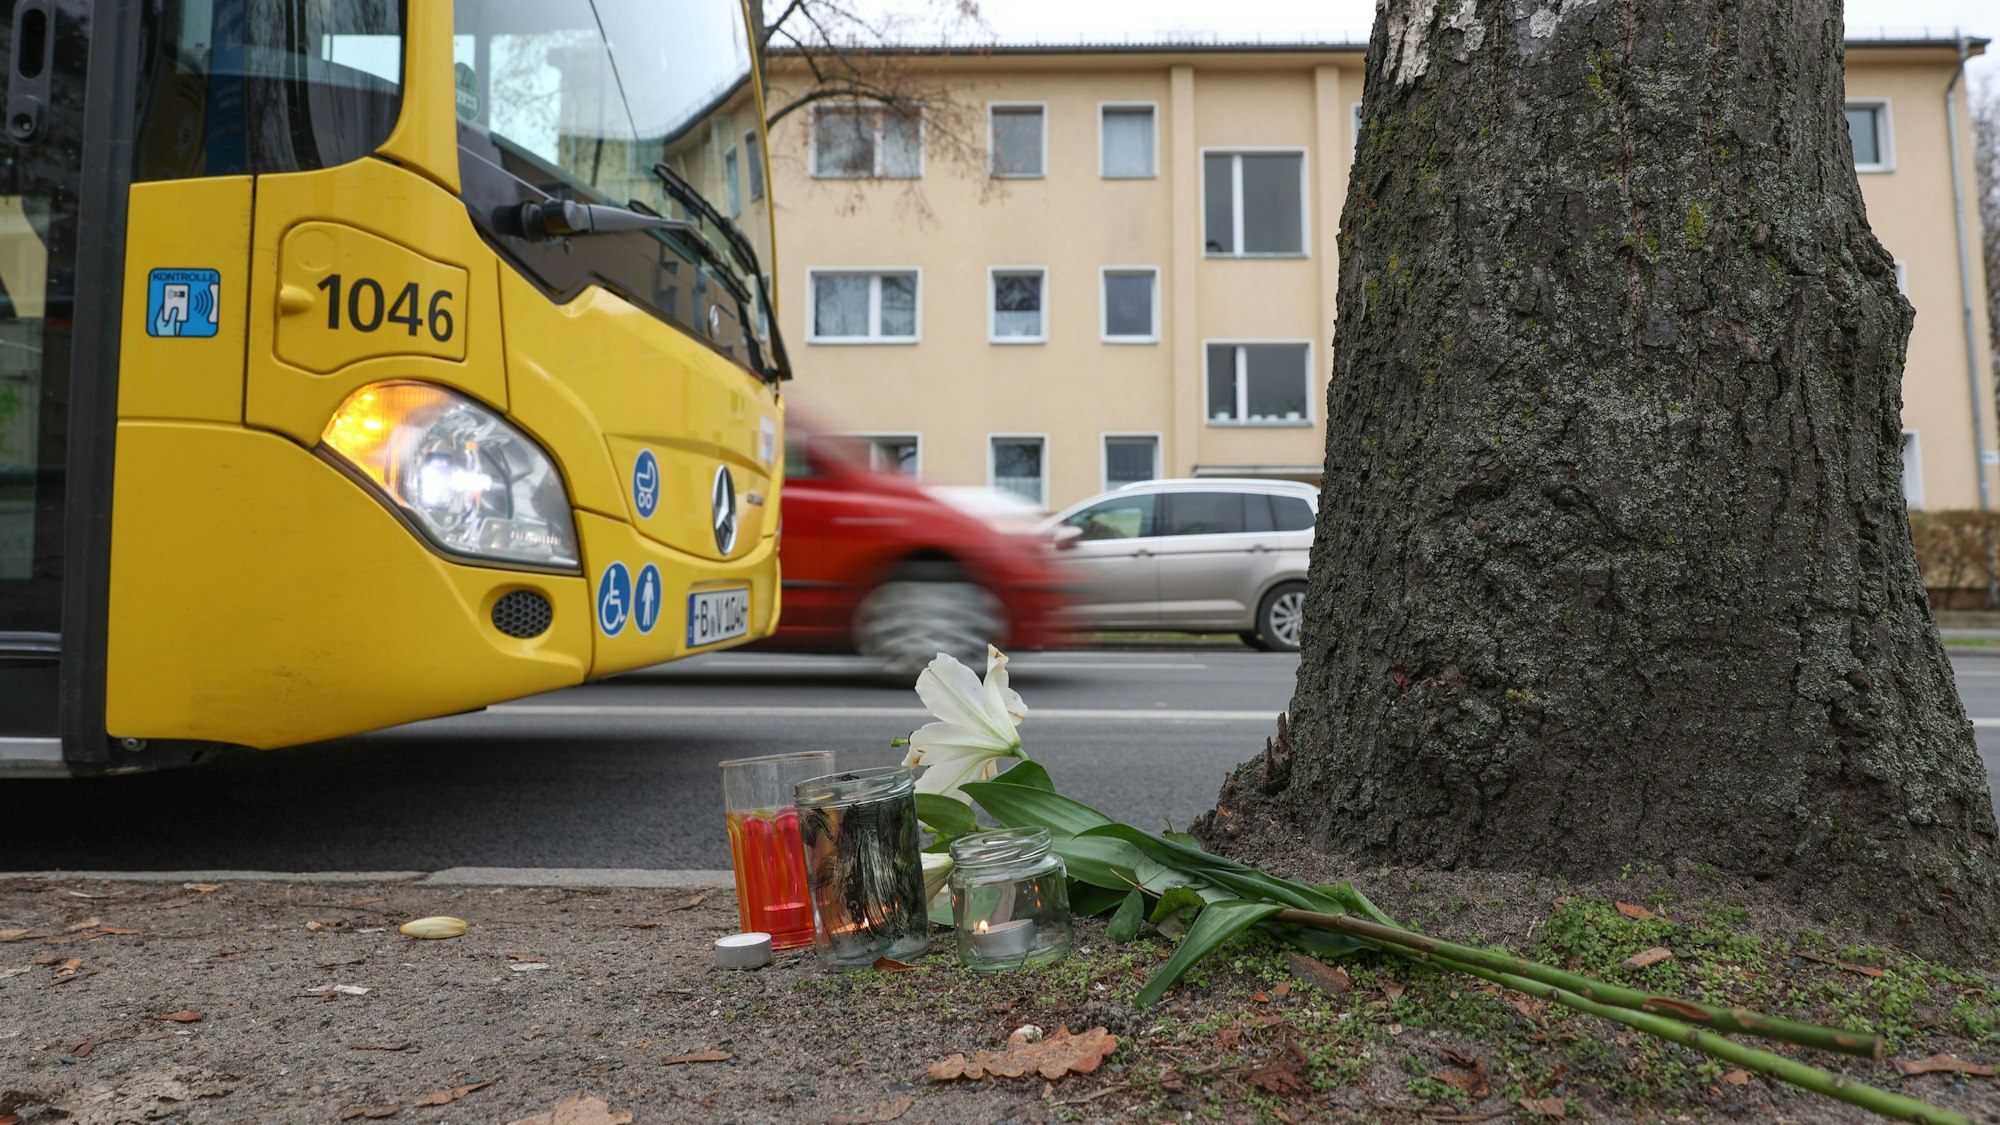 Blumen liegen an einer Bushaltestelle an der Leonorenstraße im Berliner Stadtteil Lankwitz. Nach einem schweren Unfall mit einem Doppeldecker-Bus der BVG ist am Samstagabend (10. Dezember 2022) eine 15 Jahre alte Jugendliche gestorben, eine weitere wurde schwer verletzt.